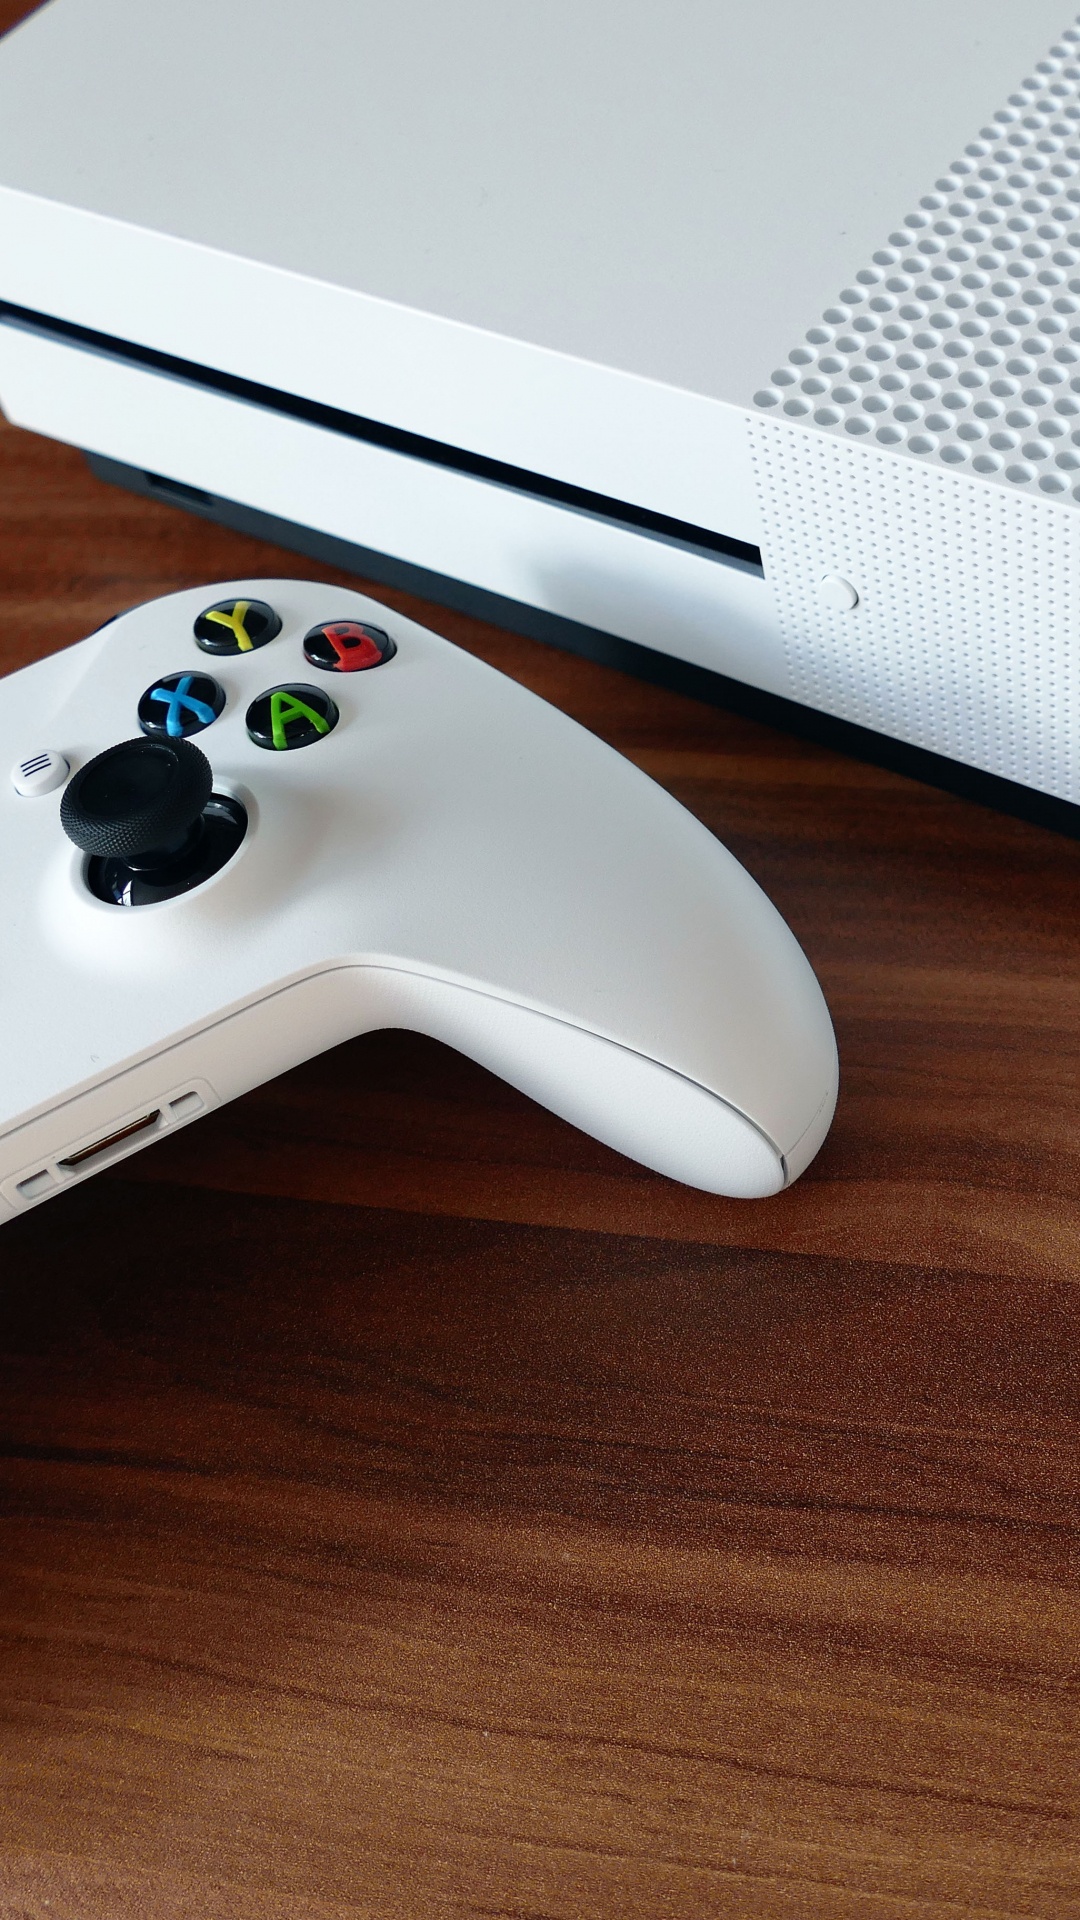 Consola Xbox One Blanca y Controlador de Juegos. Wallpaper in 1080x1920 Resolution